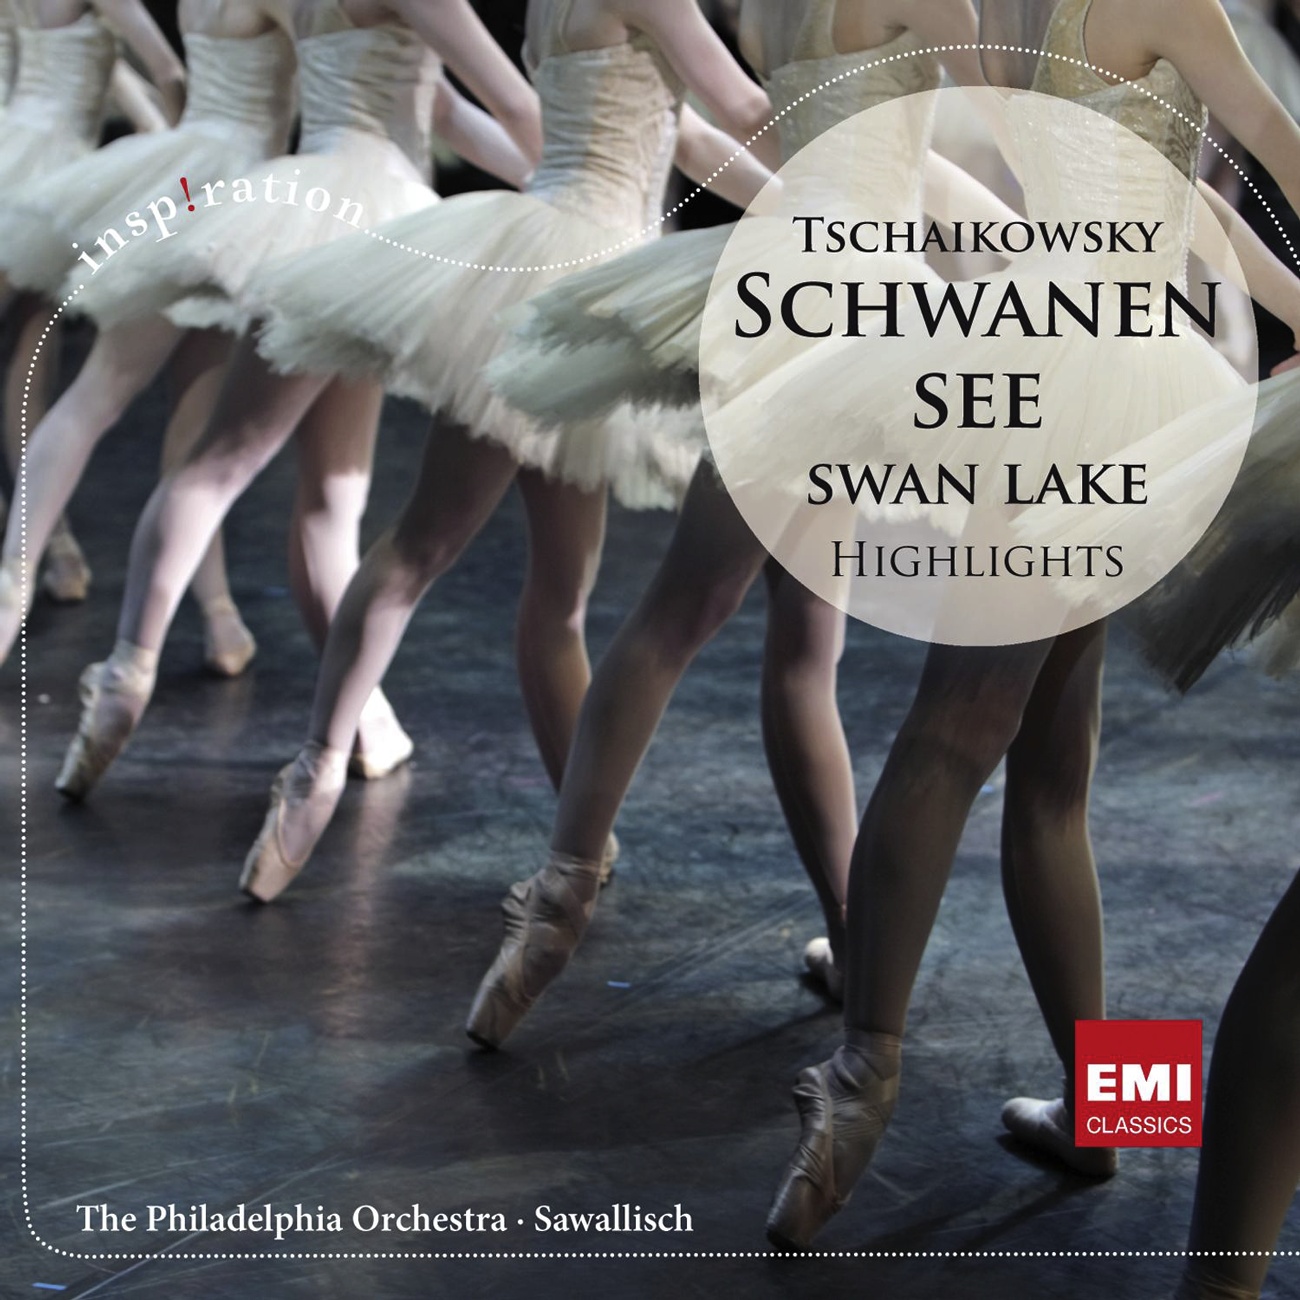 Swan Lake - Ballet in four acts Op. 20, ACT 4: No. 29 - Scene finale (Andante - Allegro agitato - Alla breve. Moderato e maestos